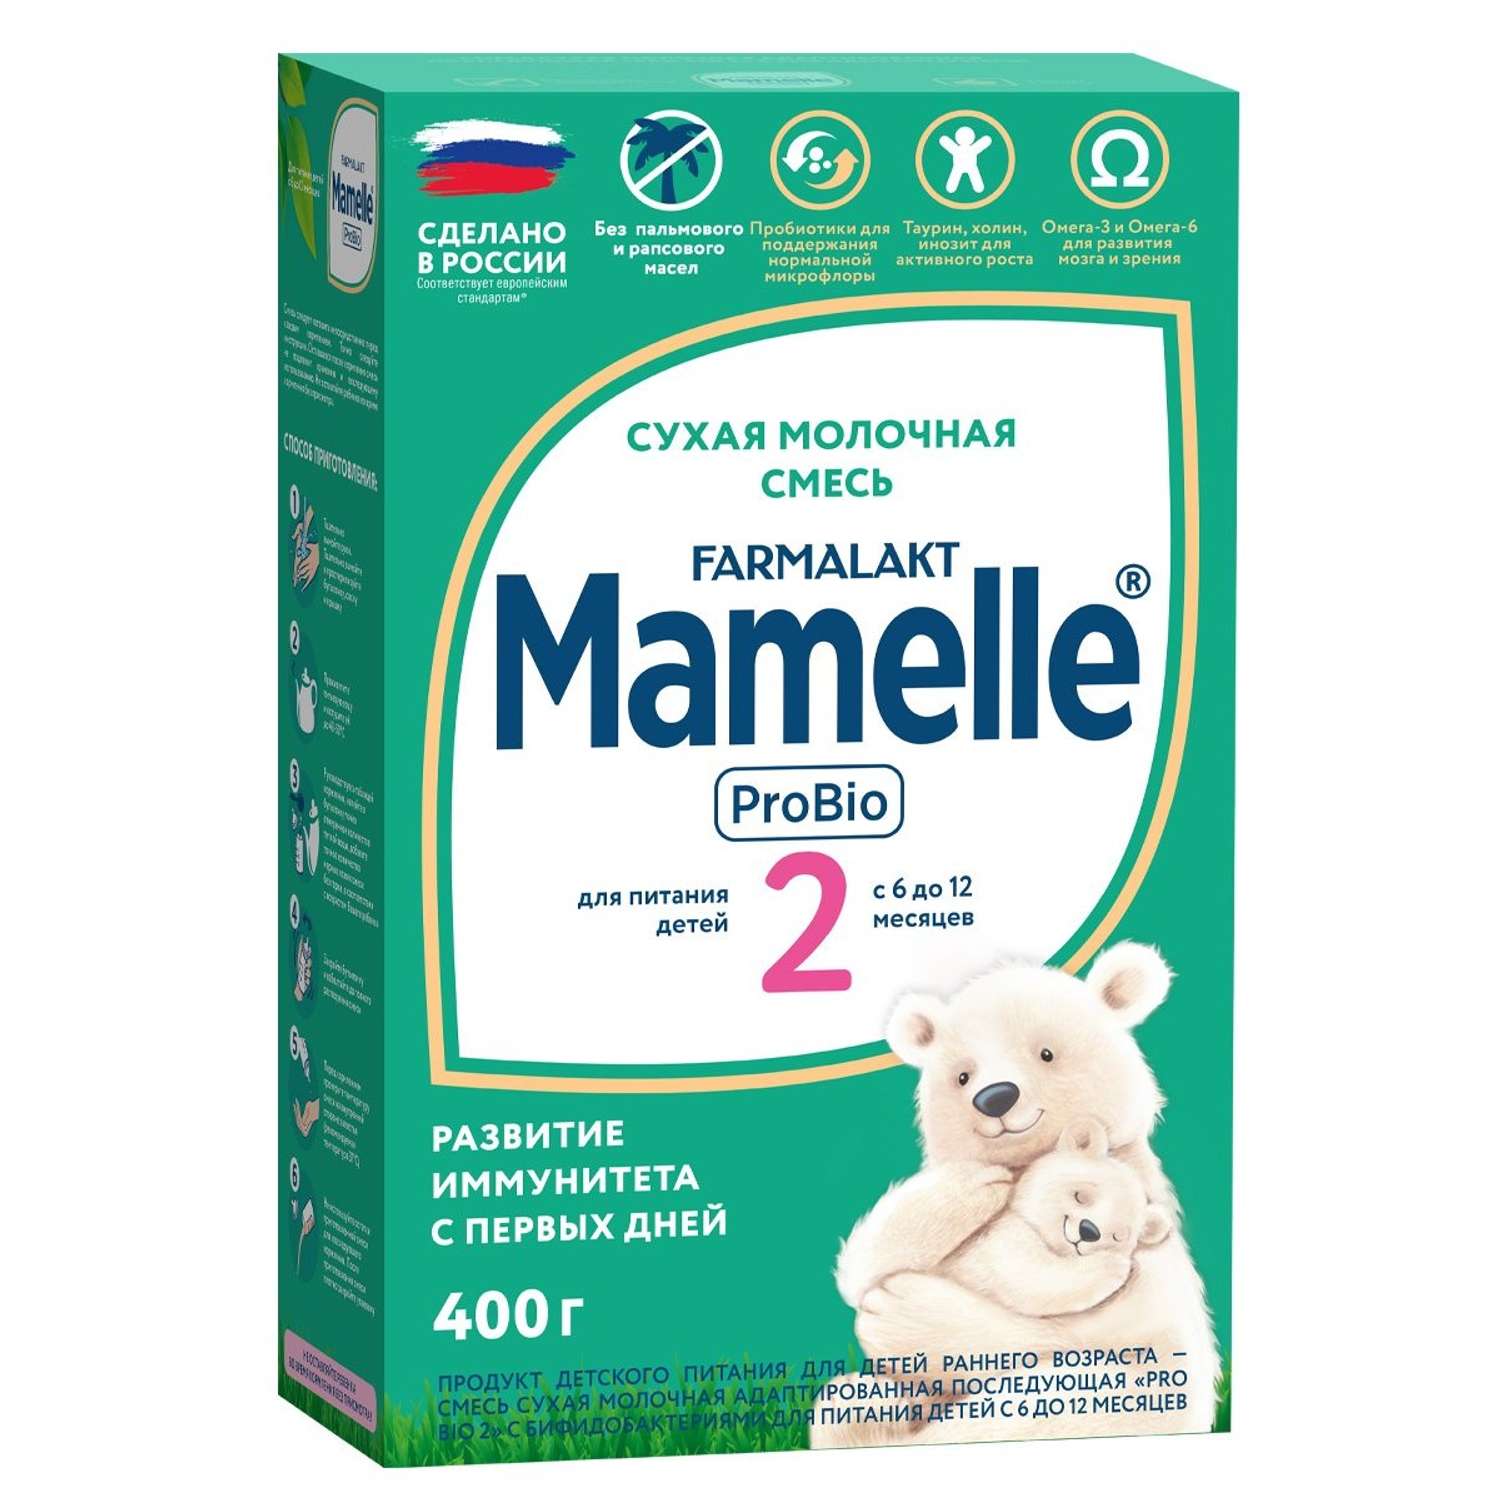 Смесь сухая молочная Mamelle Pro Bio 2 адаптированная последующая от 6 400г - фото 1